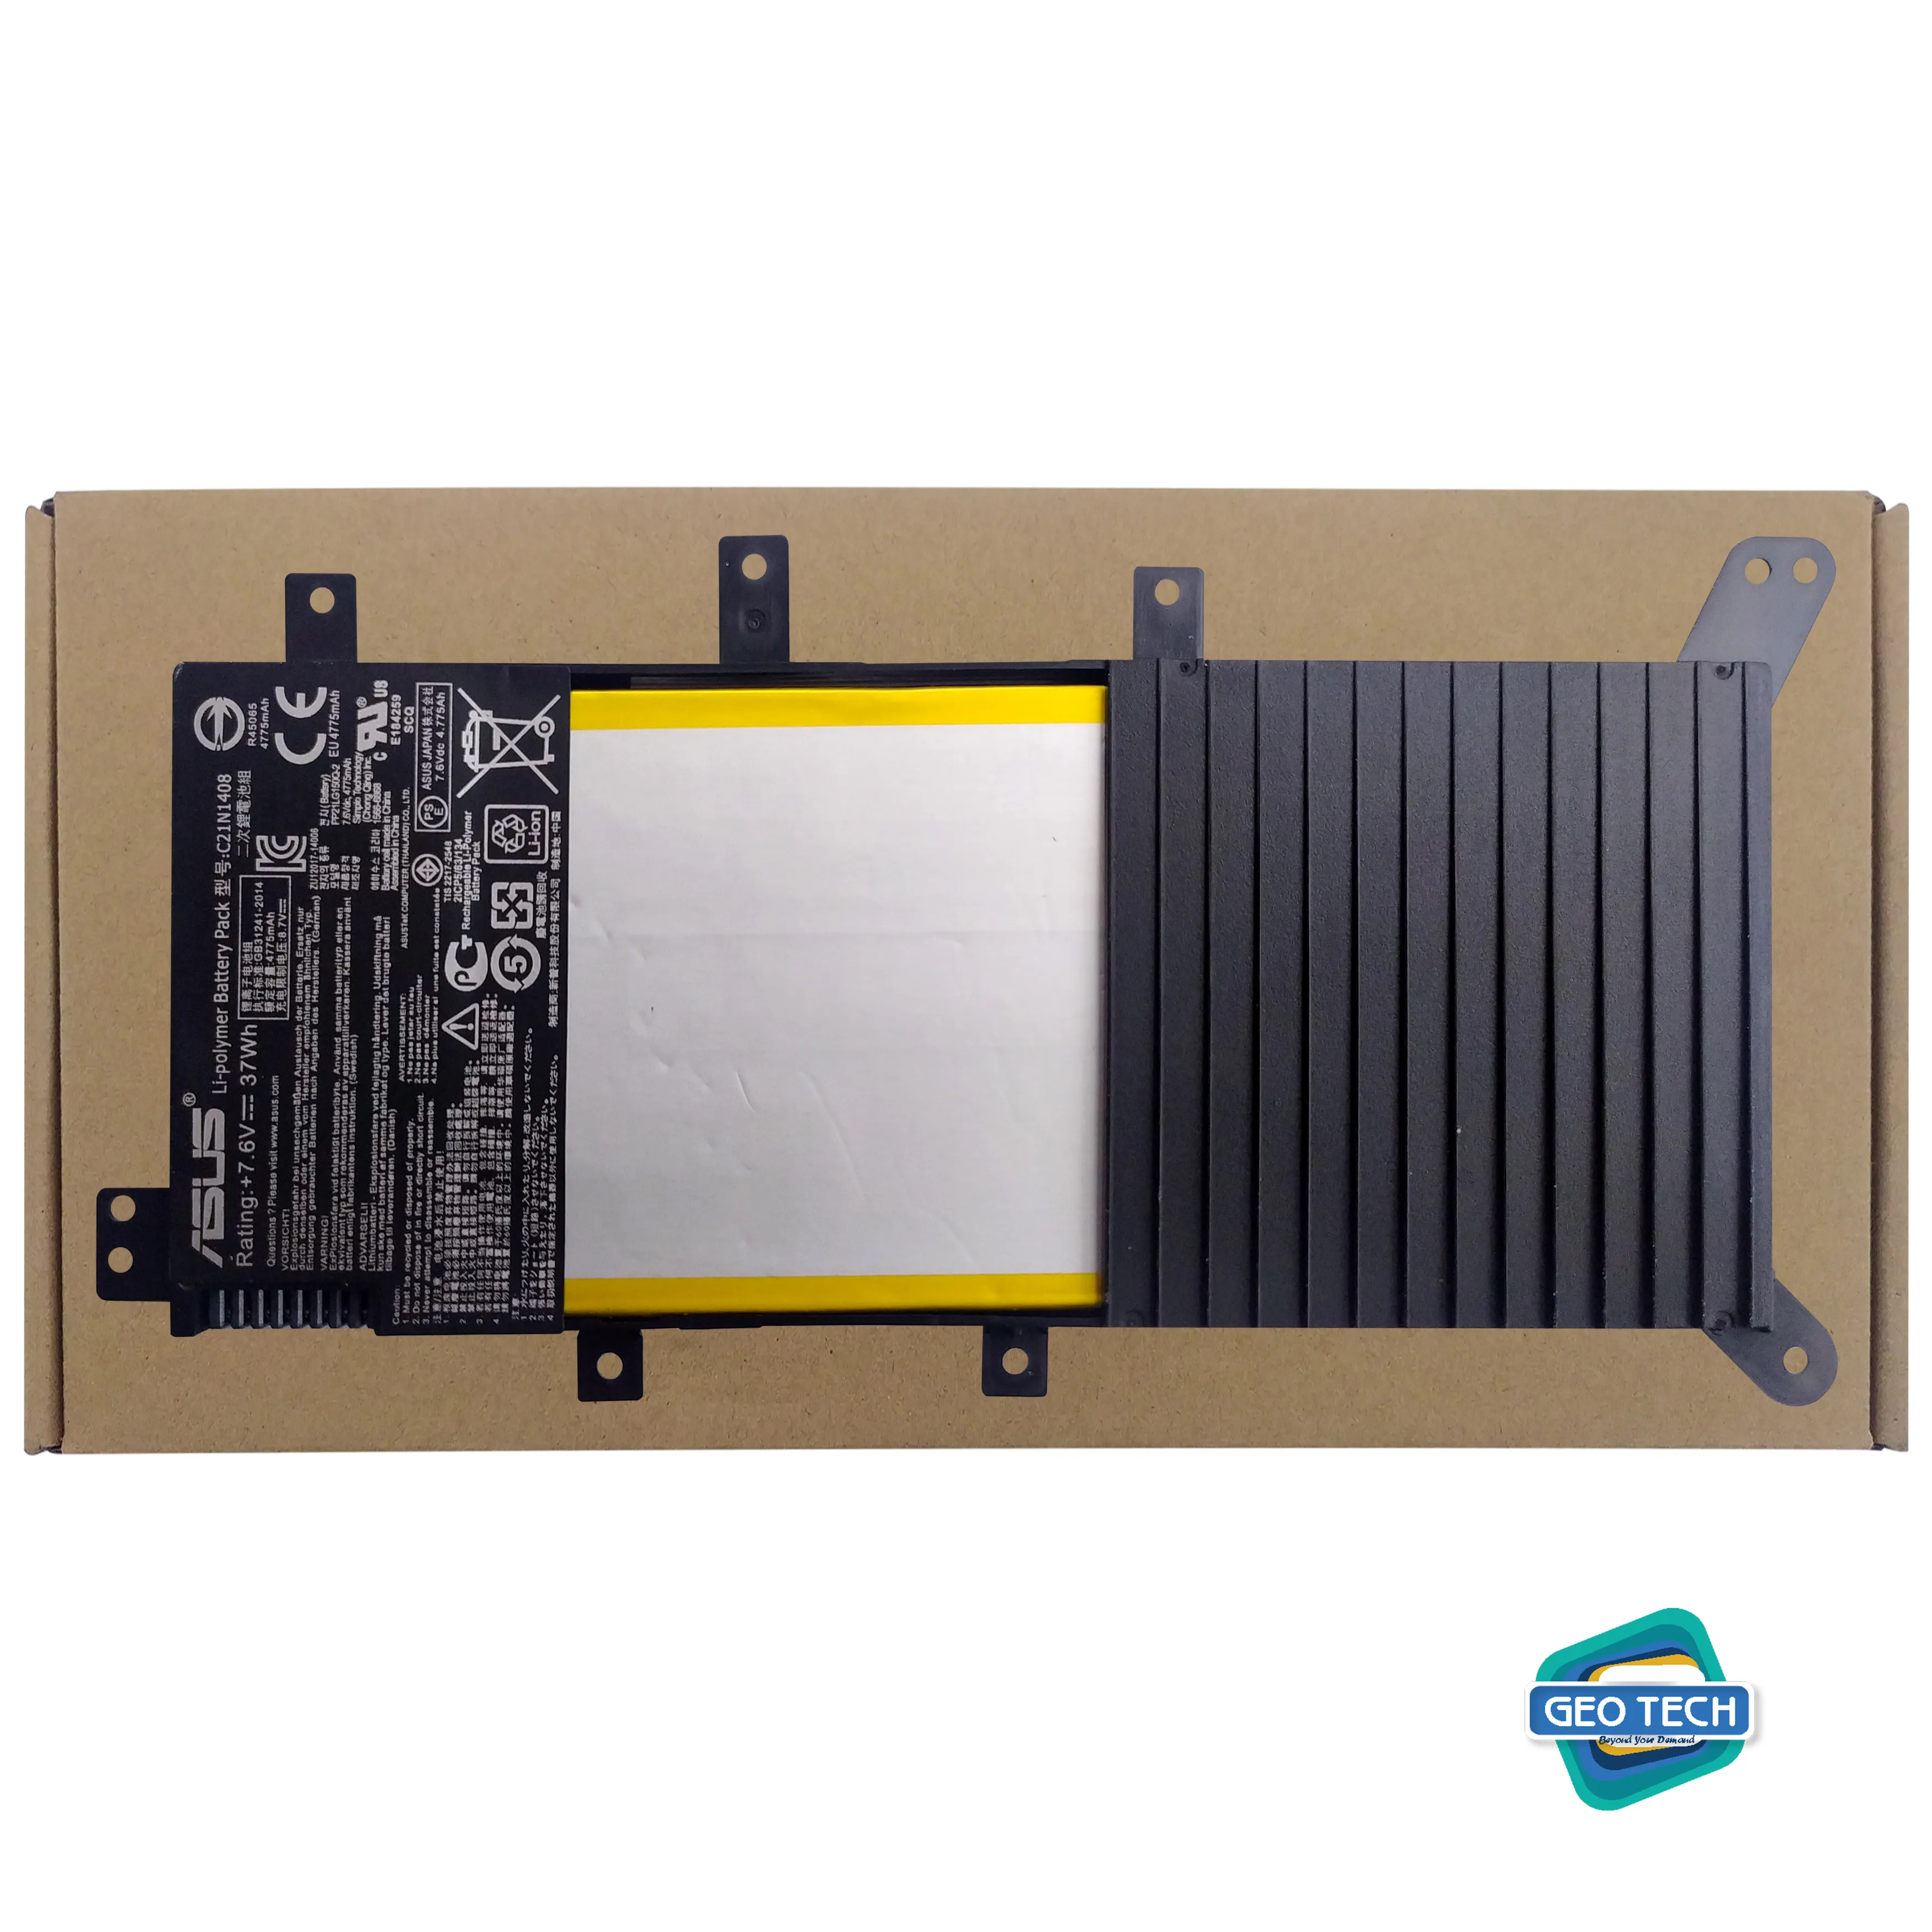 C21N1408 Laptop Battery ORIGINAL ASUS X456U C21N1408 original Battery For Asus K555L, MX555, VivoBook 4000, X555LN Series Tablet Genuine ba